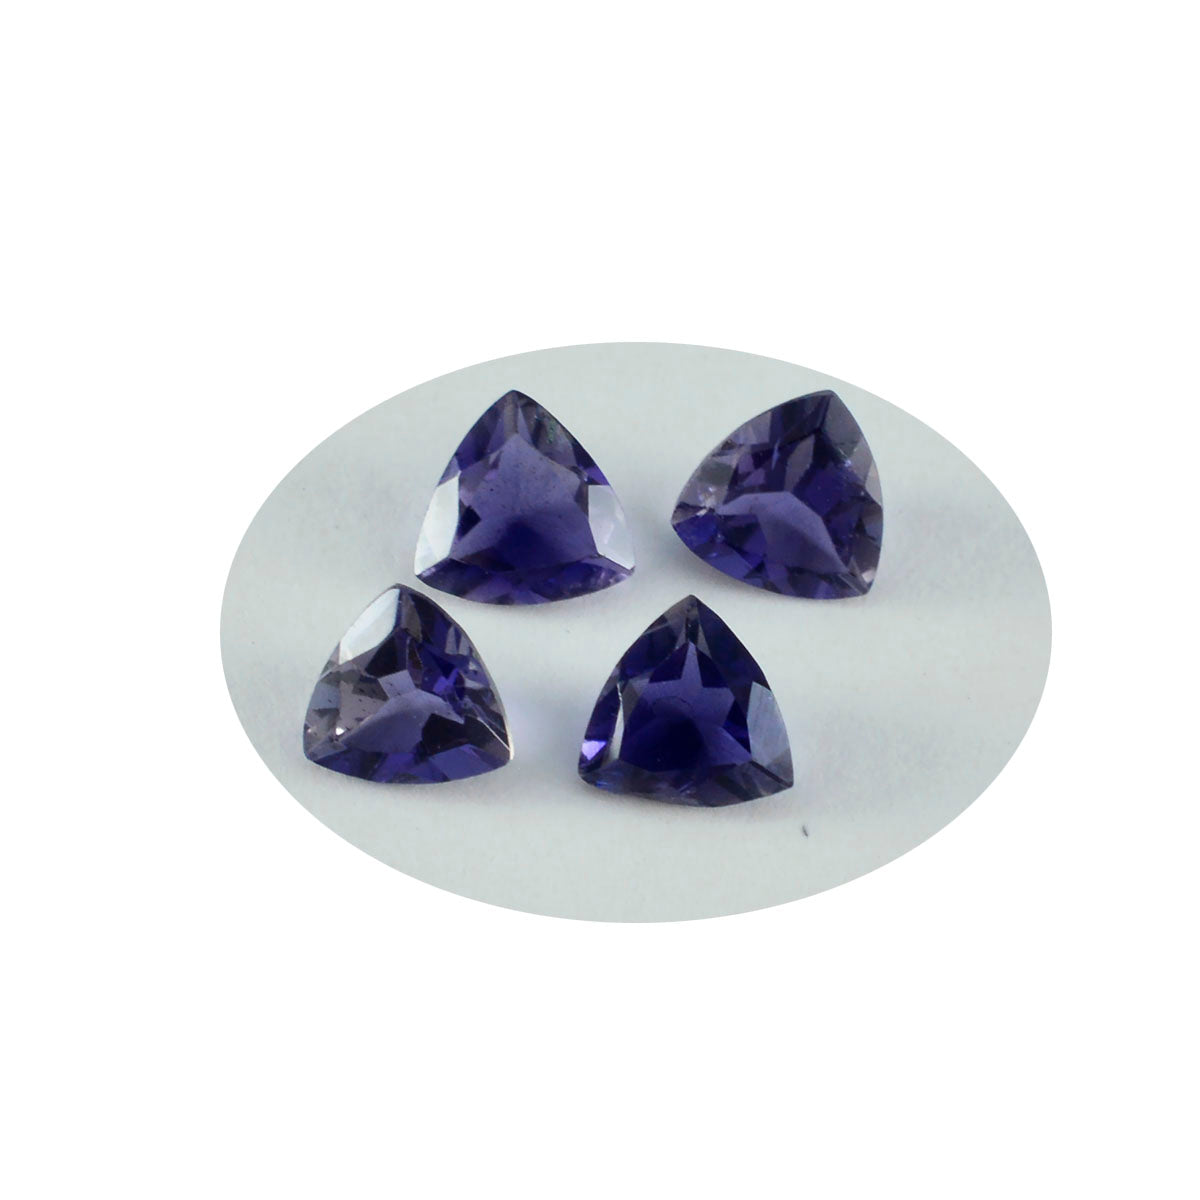 Riyogems 1PC blauwe ioliet gefacetteerde 9x9 mm biljoen vorm mooie kwaliteitsedelstenen